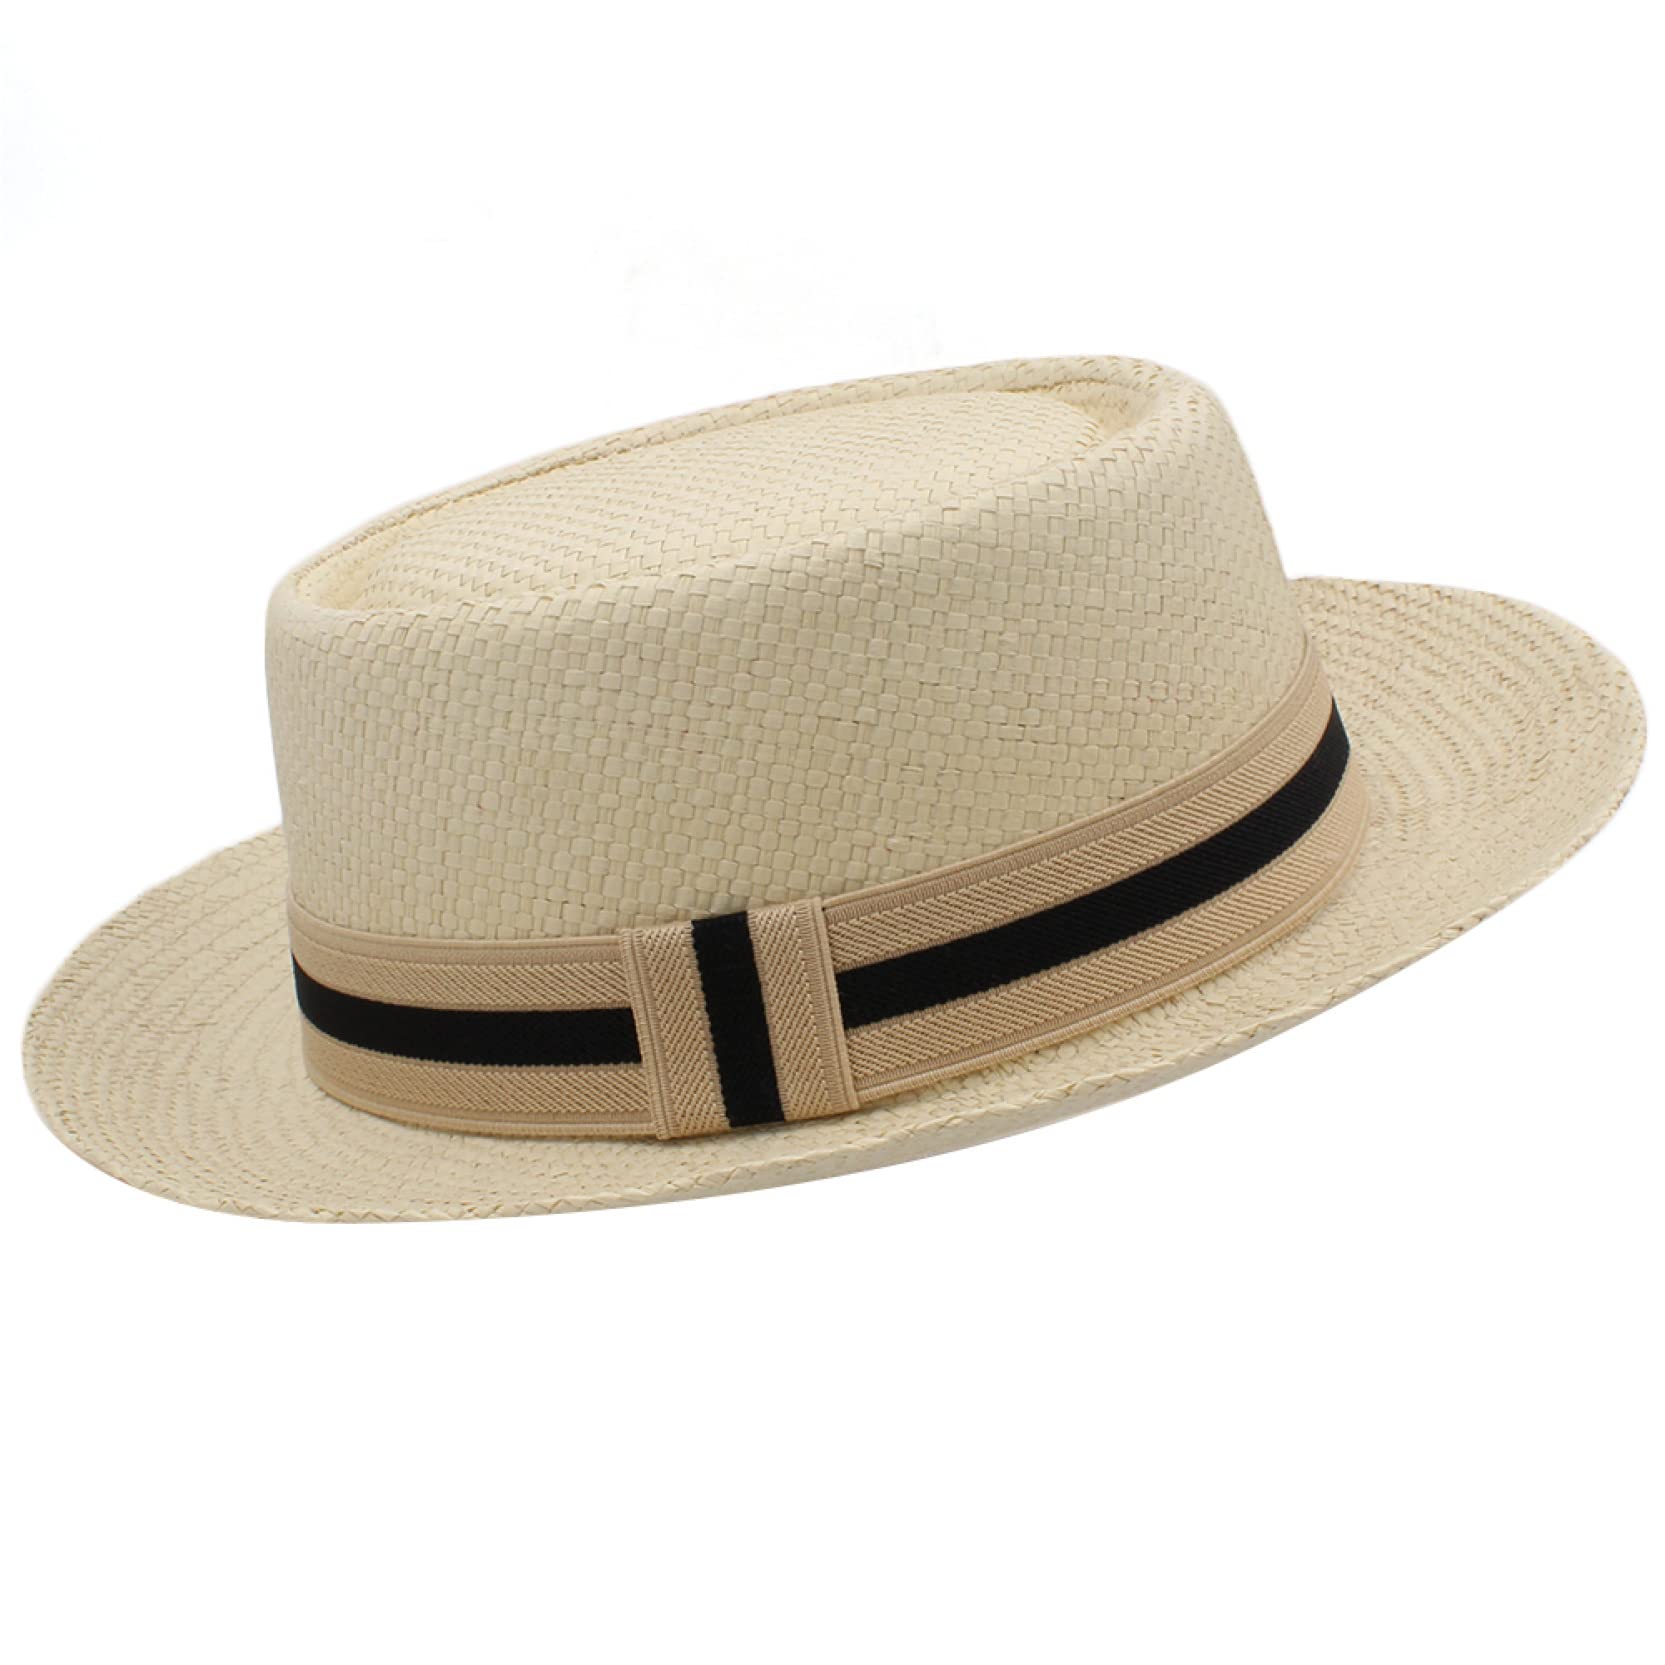 送料無料Men Women Fedora Sun Hats Classical Straw Pork Pie Hat Trilby Caps Boater Beach Travel Party Summer Larger Size B